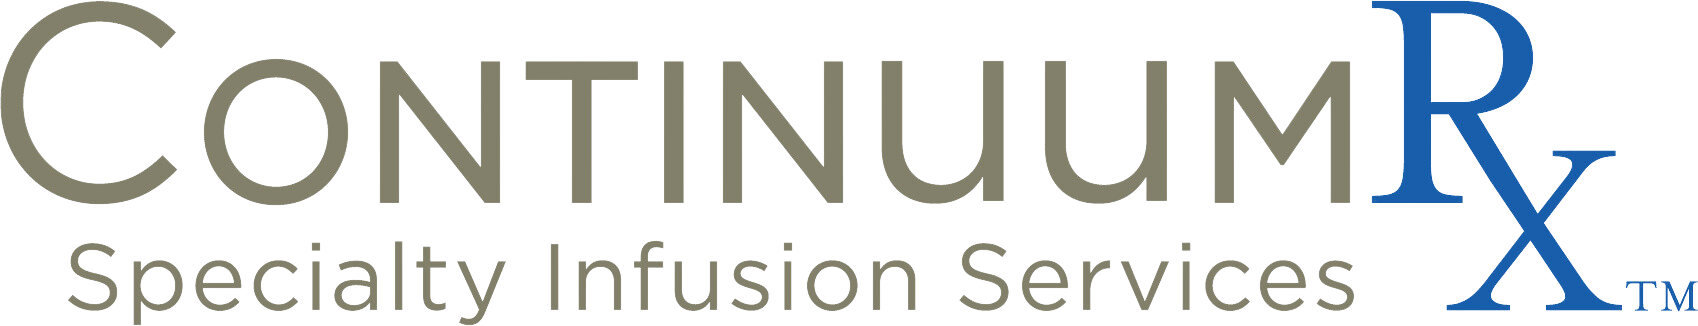 ContinuumRX-Logo TB